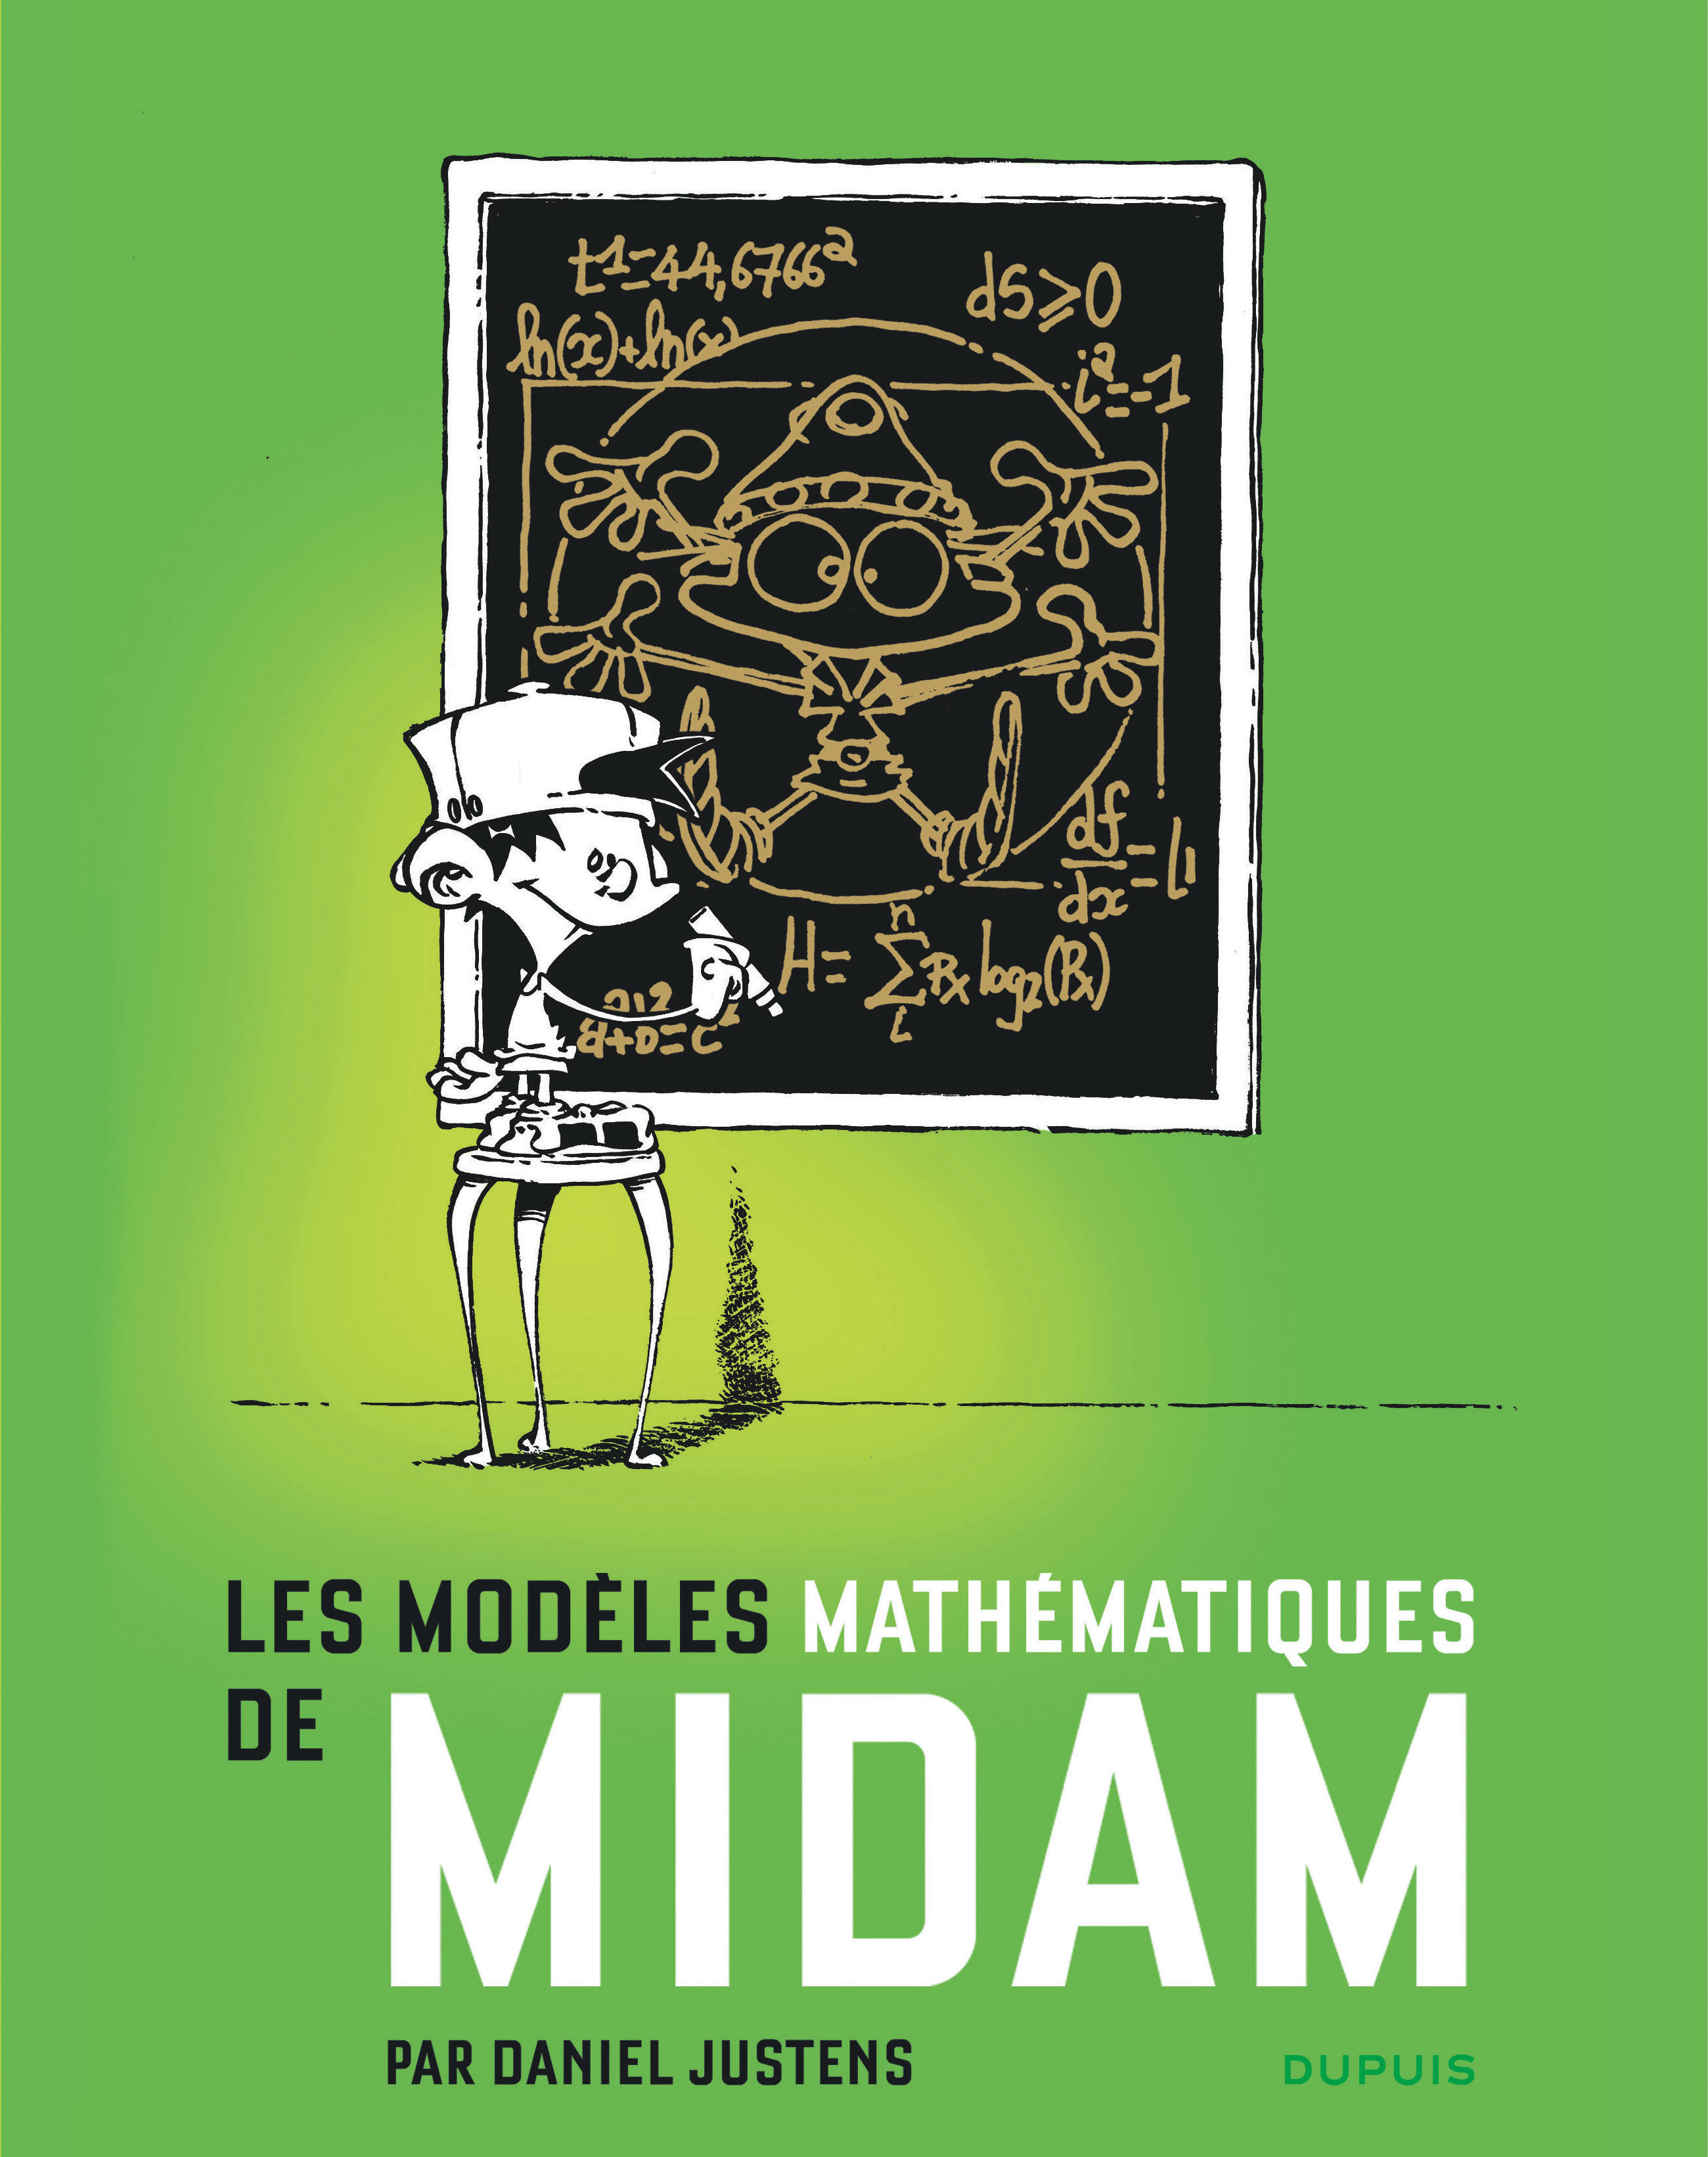 Midam – Les modèles mathématiques - couv